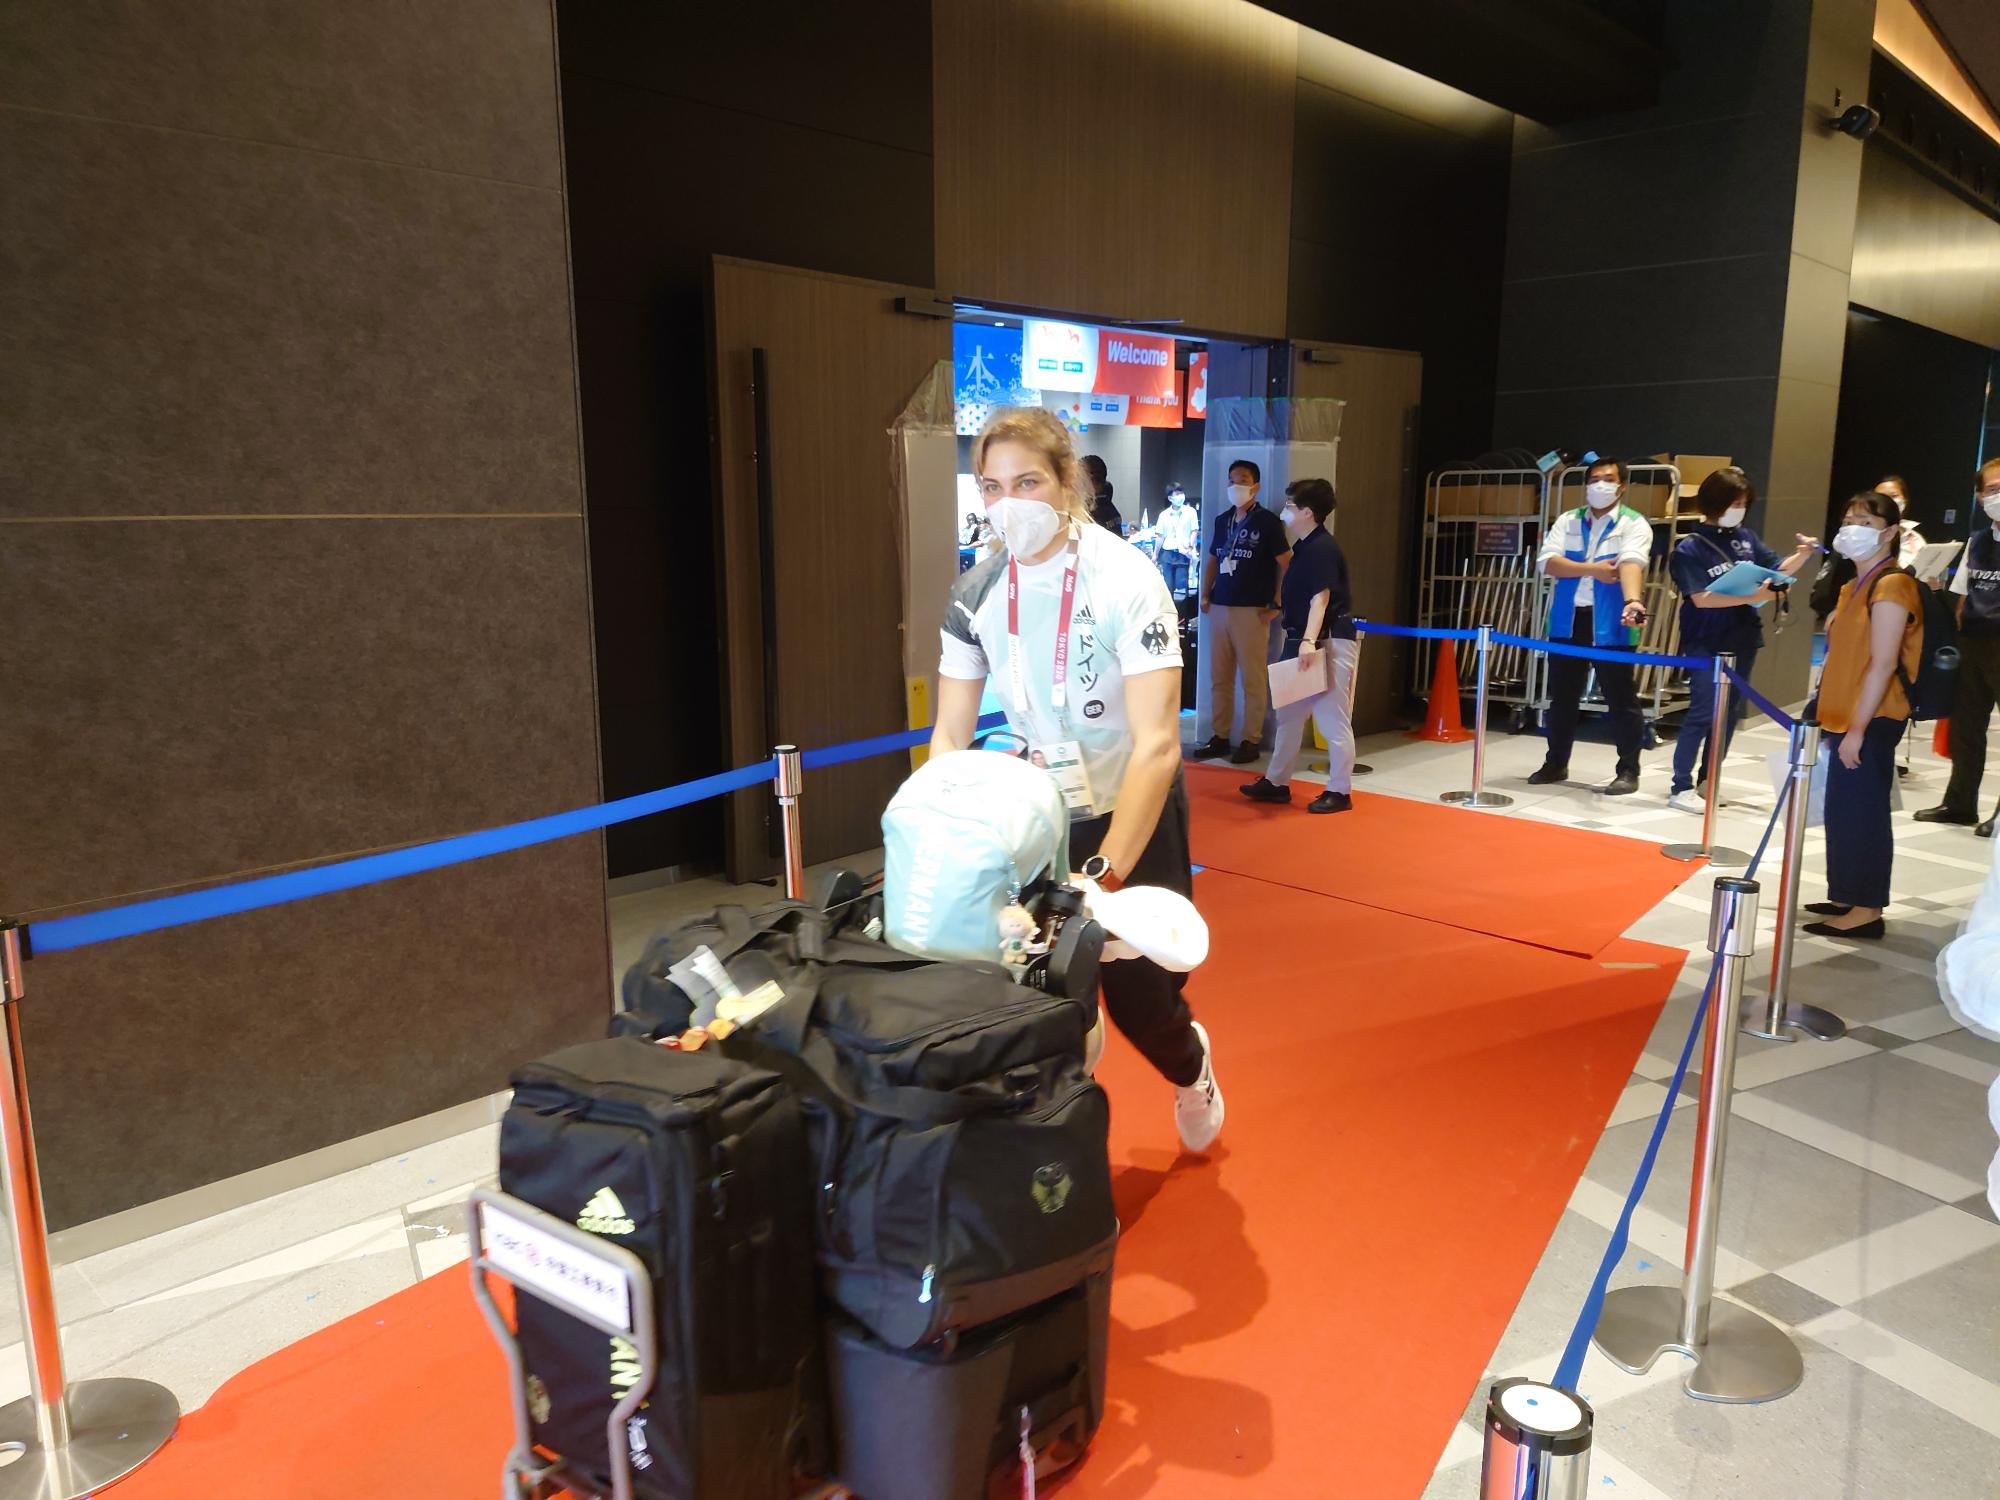 アナ・シェル選手が、赤いカーペットの上を、荷物をたくさん載せたカートを押している写真